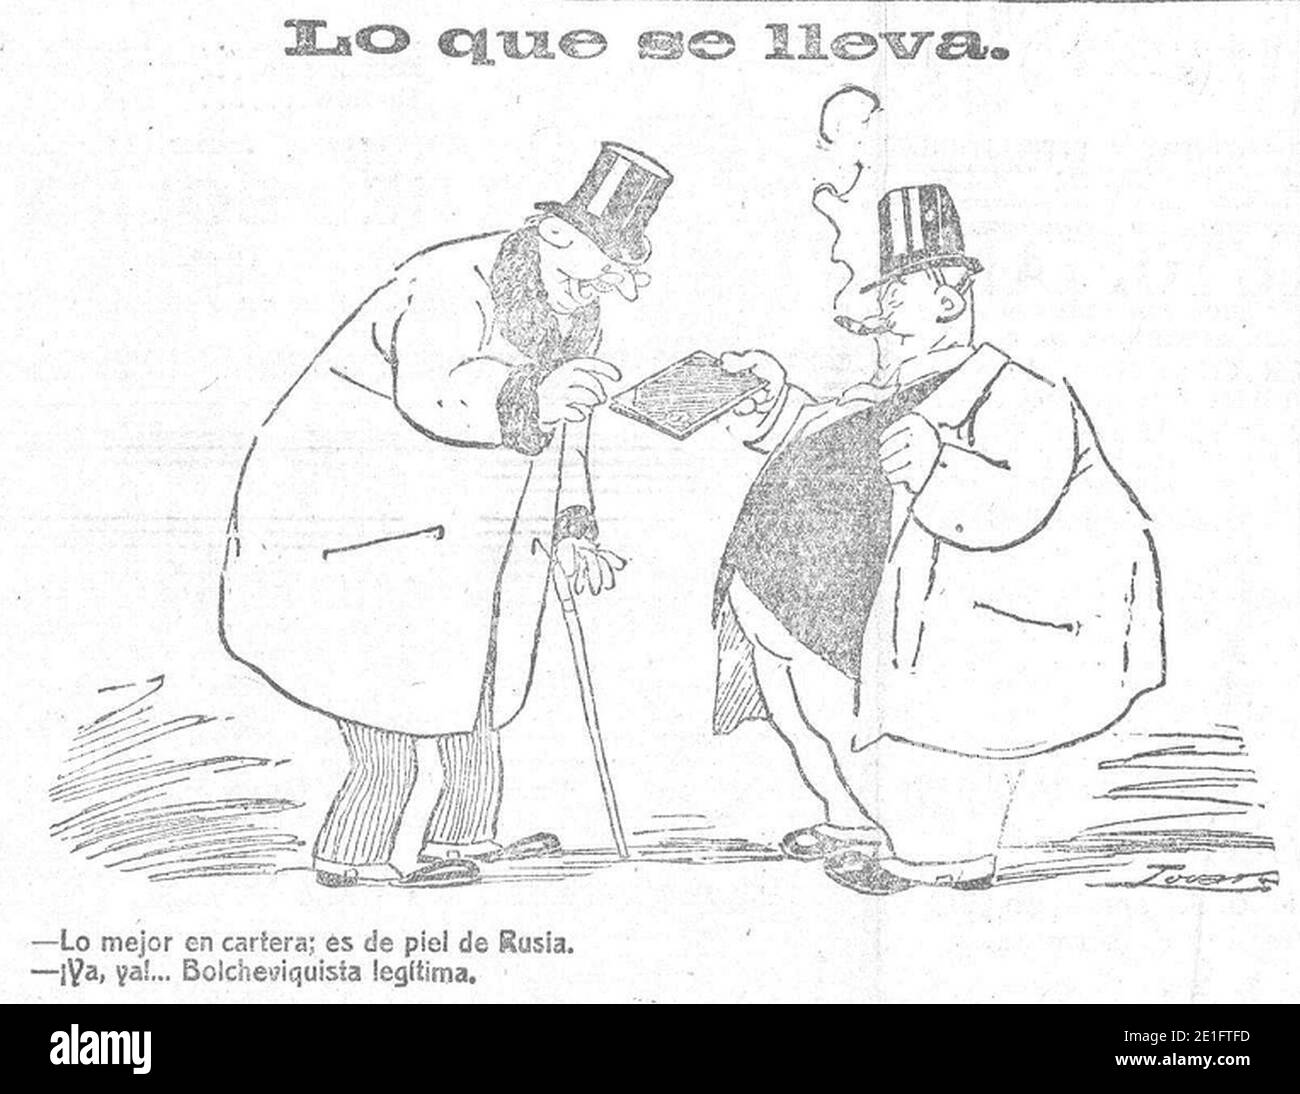 Lo que se lleva, de Tovar, Heraldo de Madrid, 6 de enero de 1919. Stock Photo